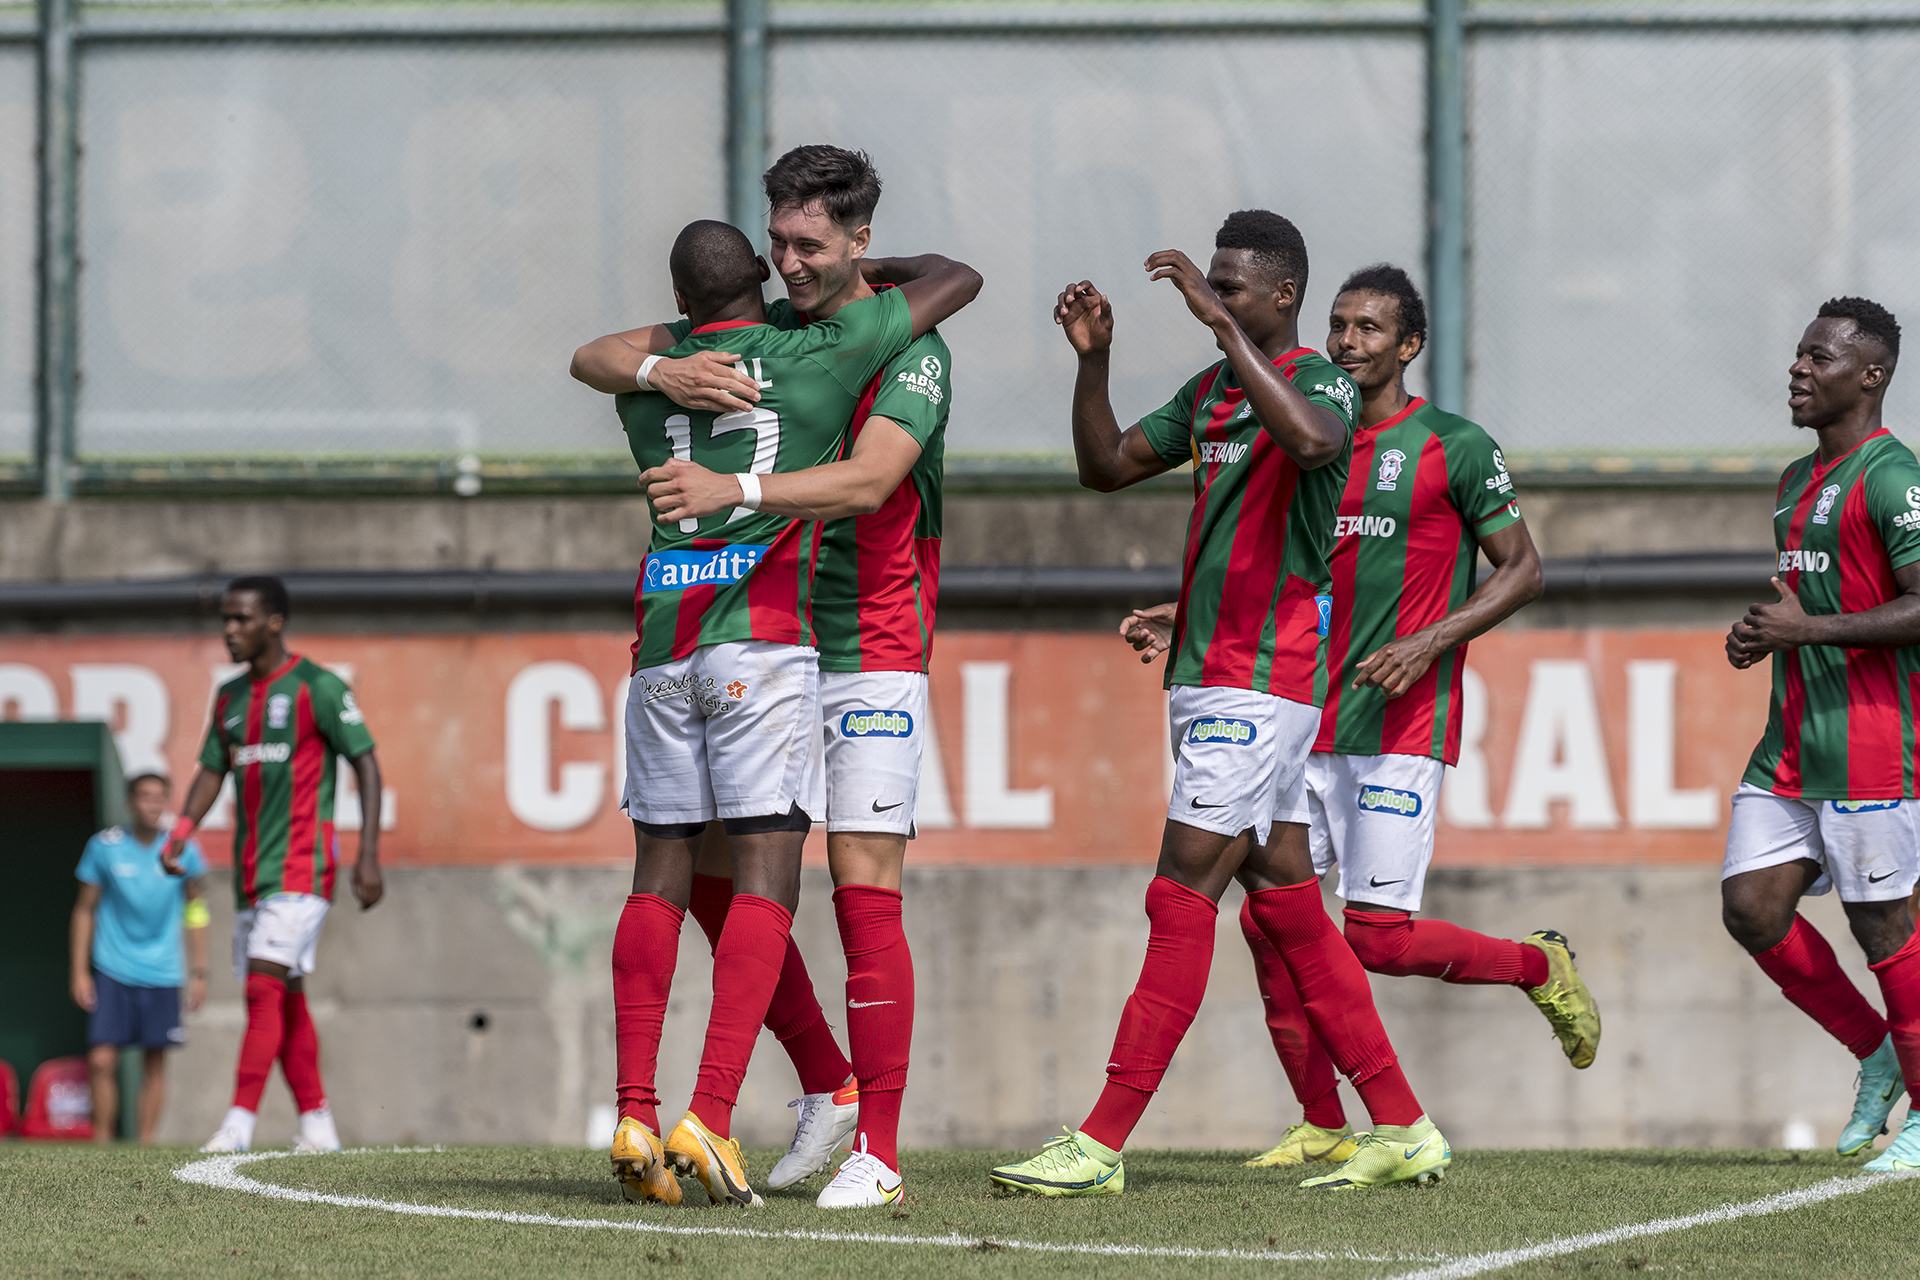 Campeonato de Portugal: madeirenses iniciam trajeto